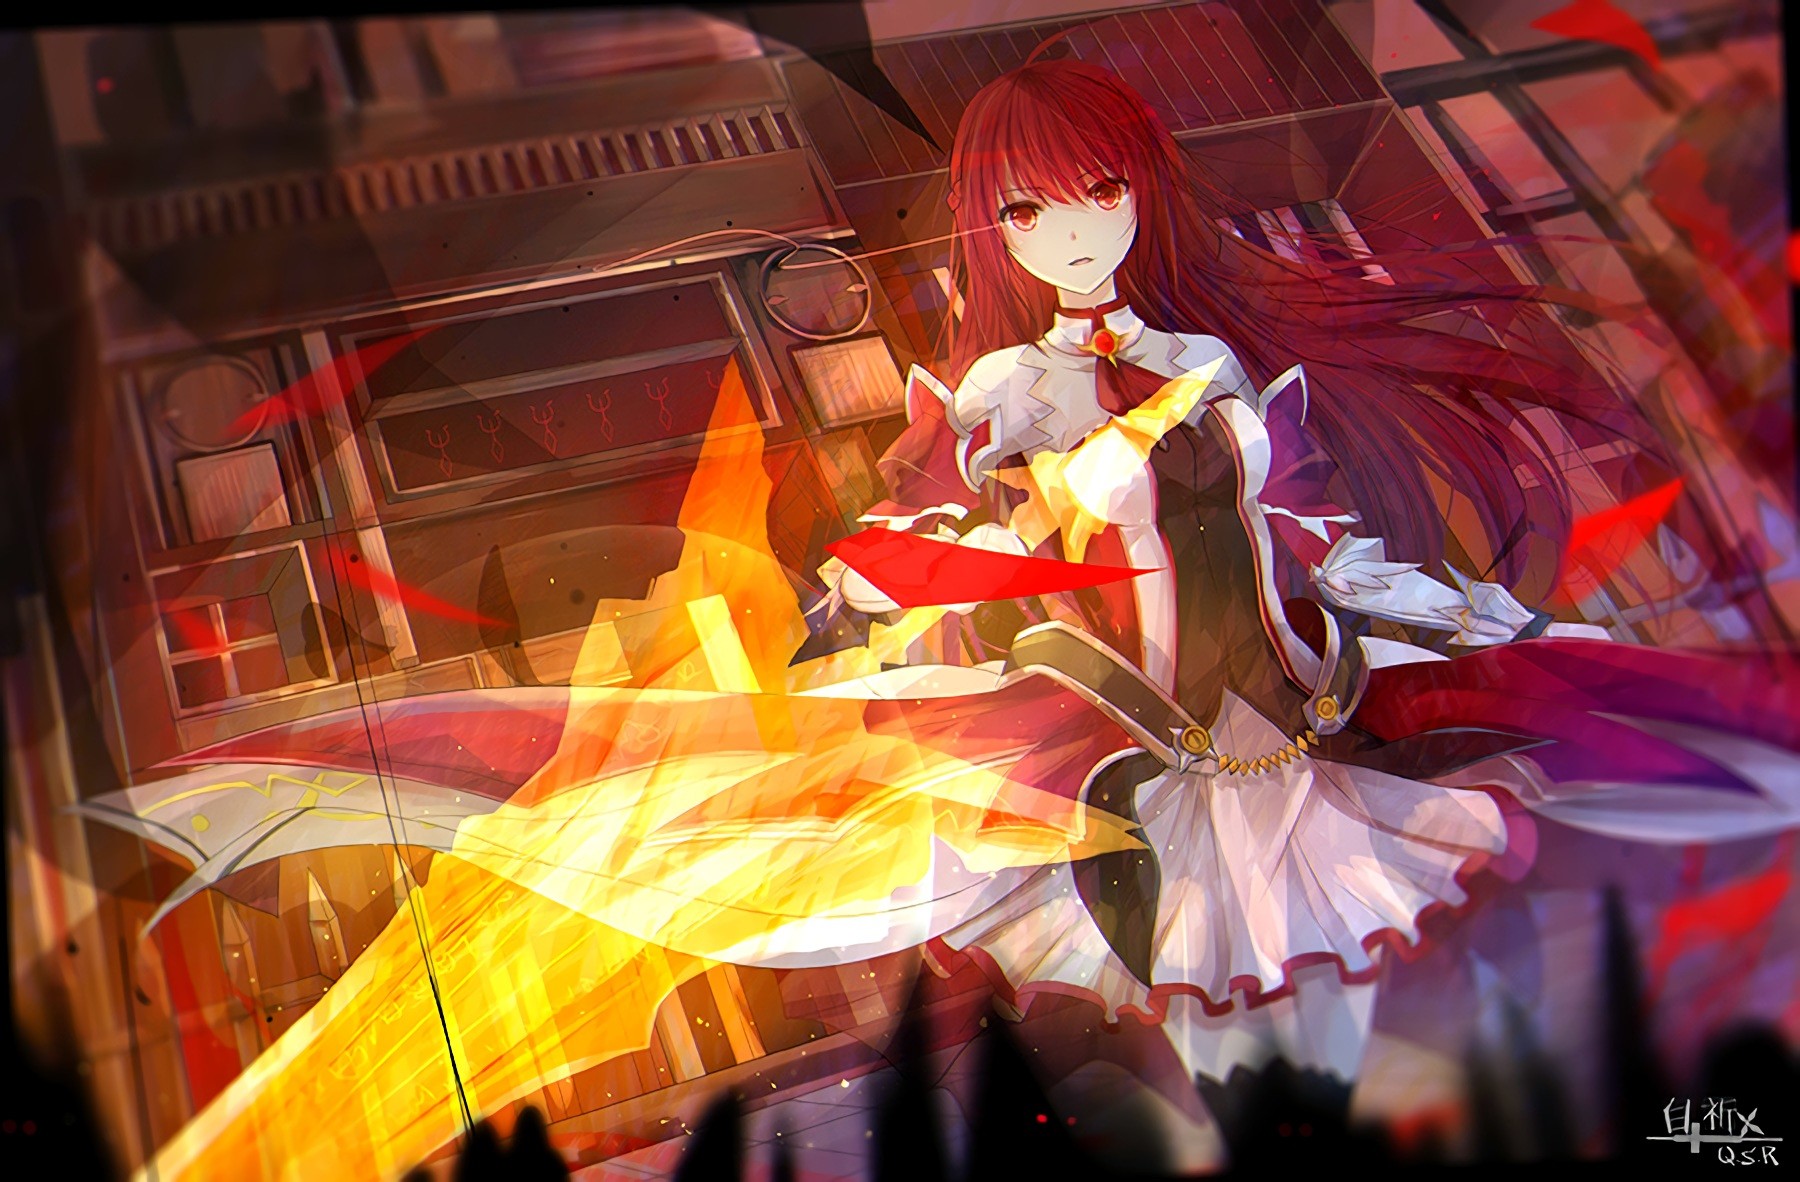 Anime 1800x1182 anime anime girls Elsword sword weapon long hair redhead red eyes Pixiv fantasy art fantasy girl